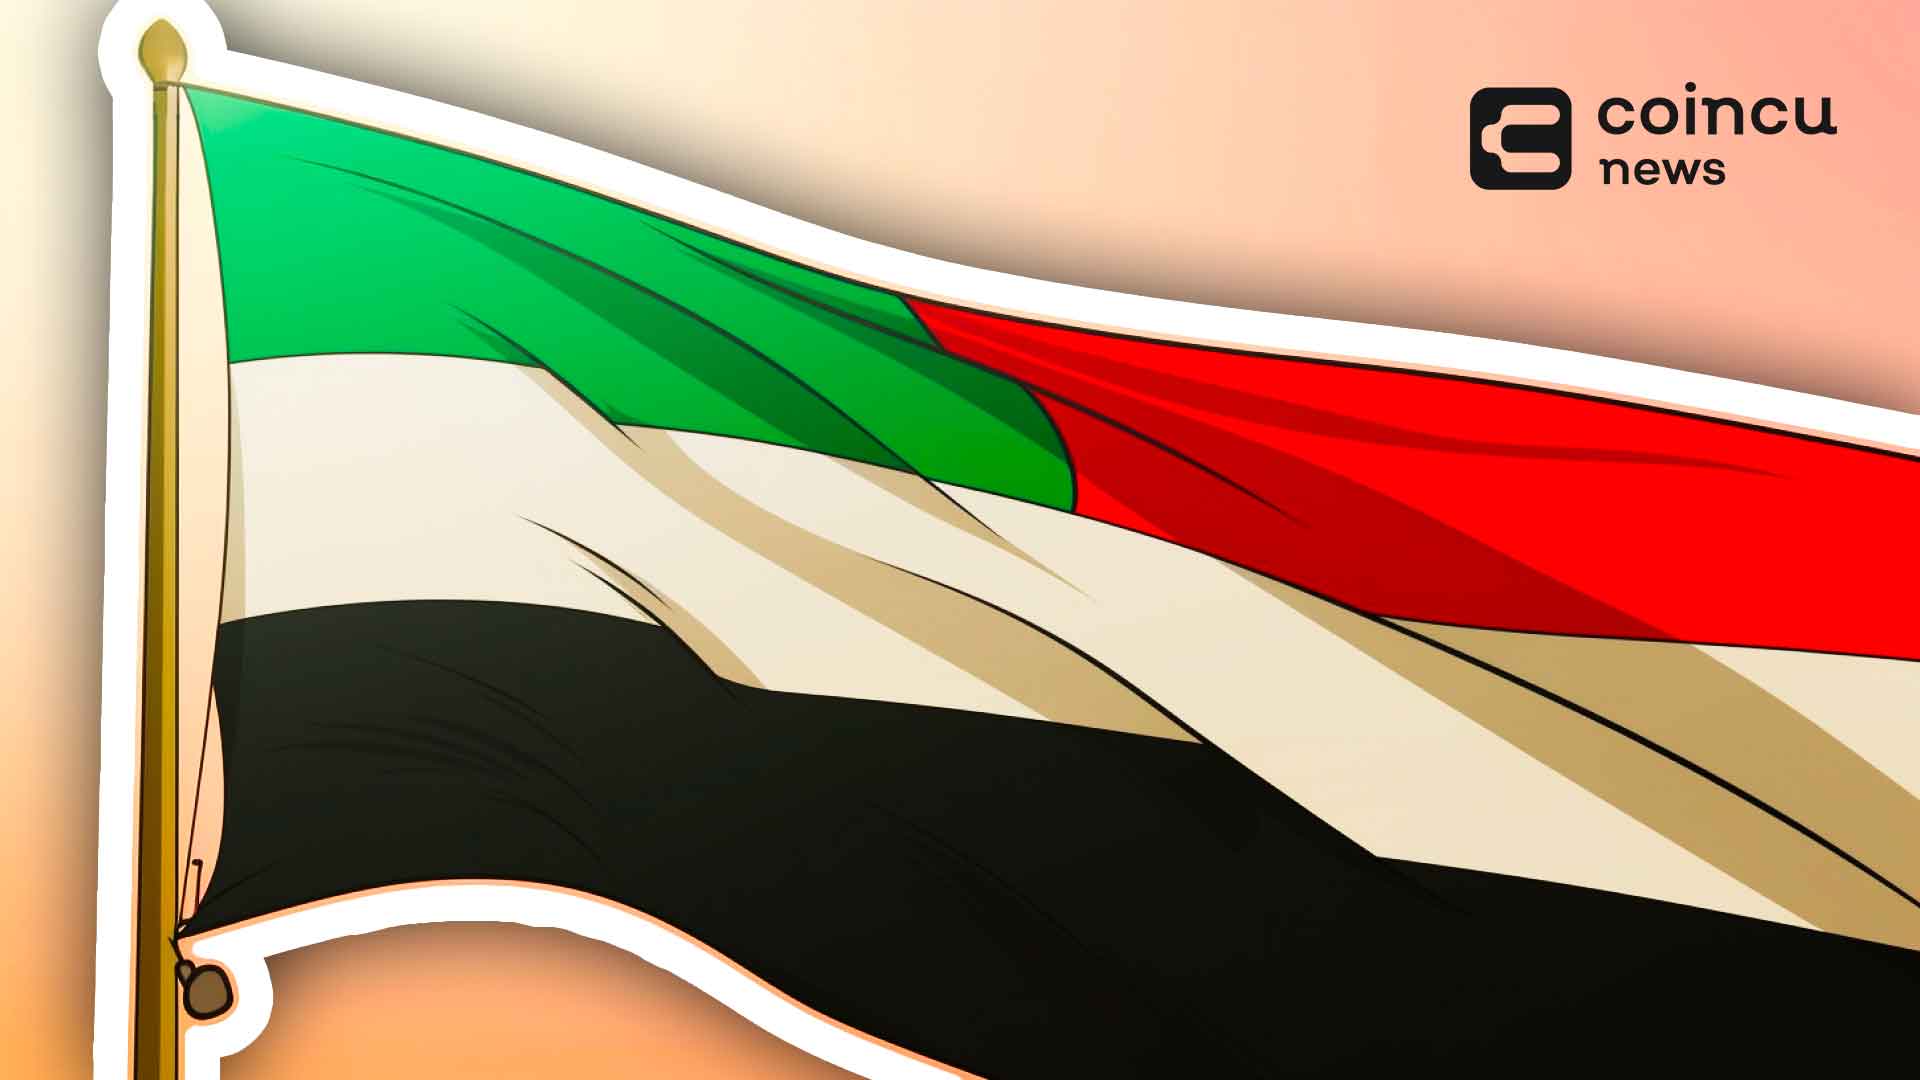 La licence Nexo à Dubaï reçoit l'approbation initiale pour stimuler l'expansion aux Émirats arabes unis